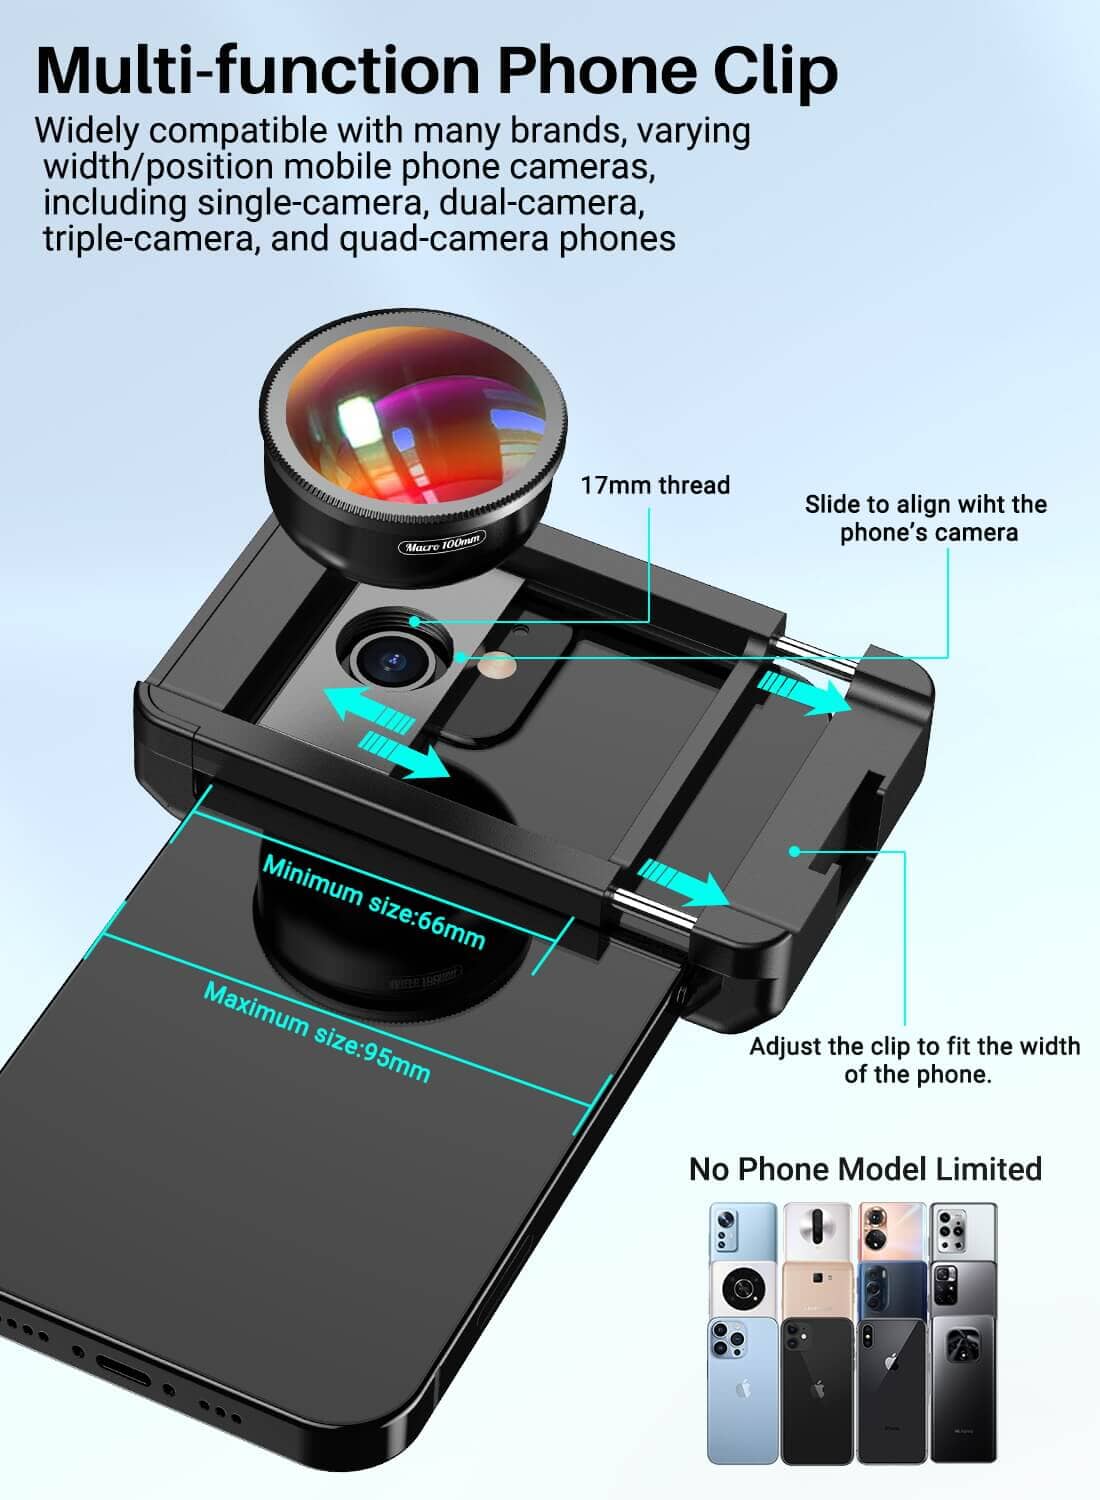 Apexel Objectif Macro HD à Clipser pour téléphone Portable 100 mm